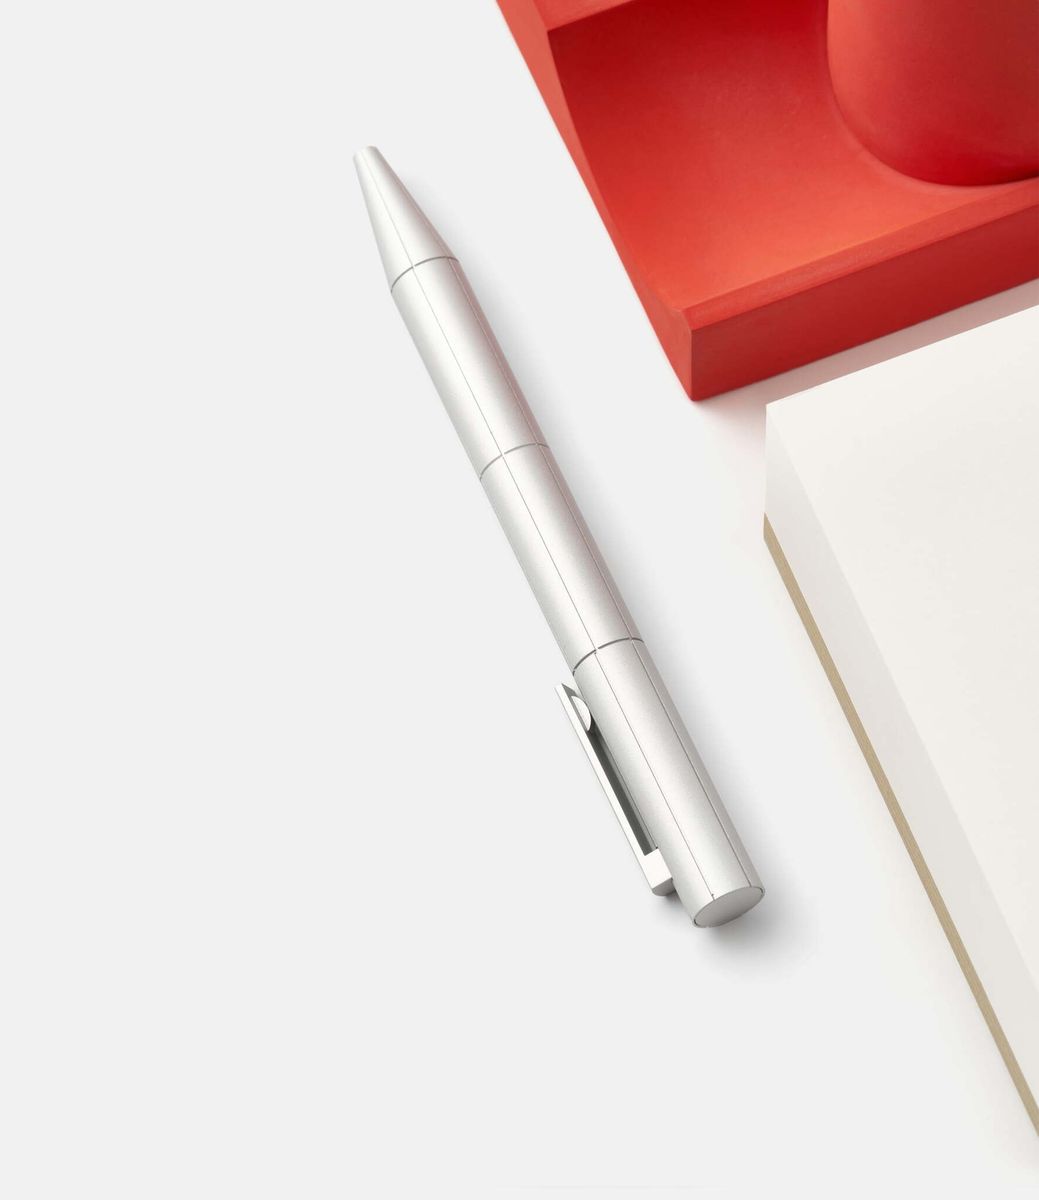 22 studio Seam Ballpoint Pen Aluminium — ручка из алюминия